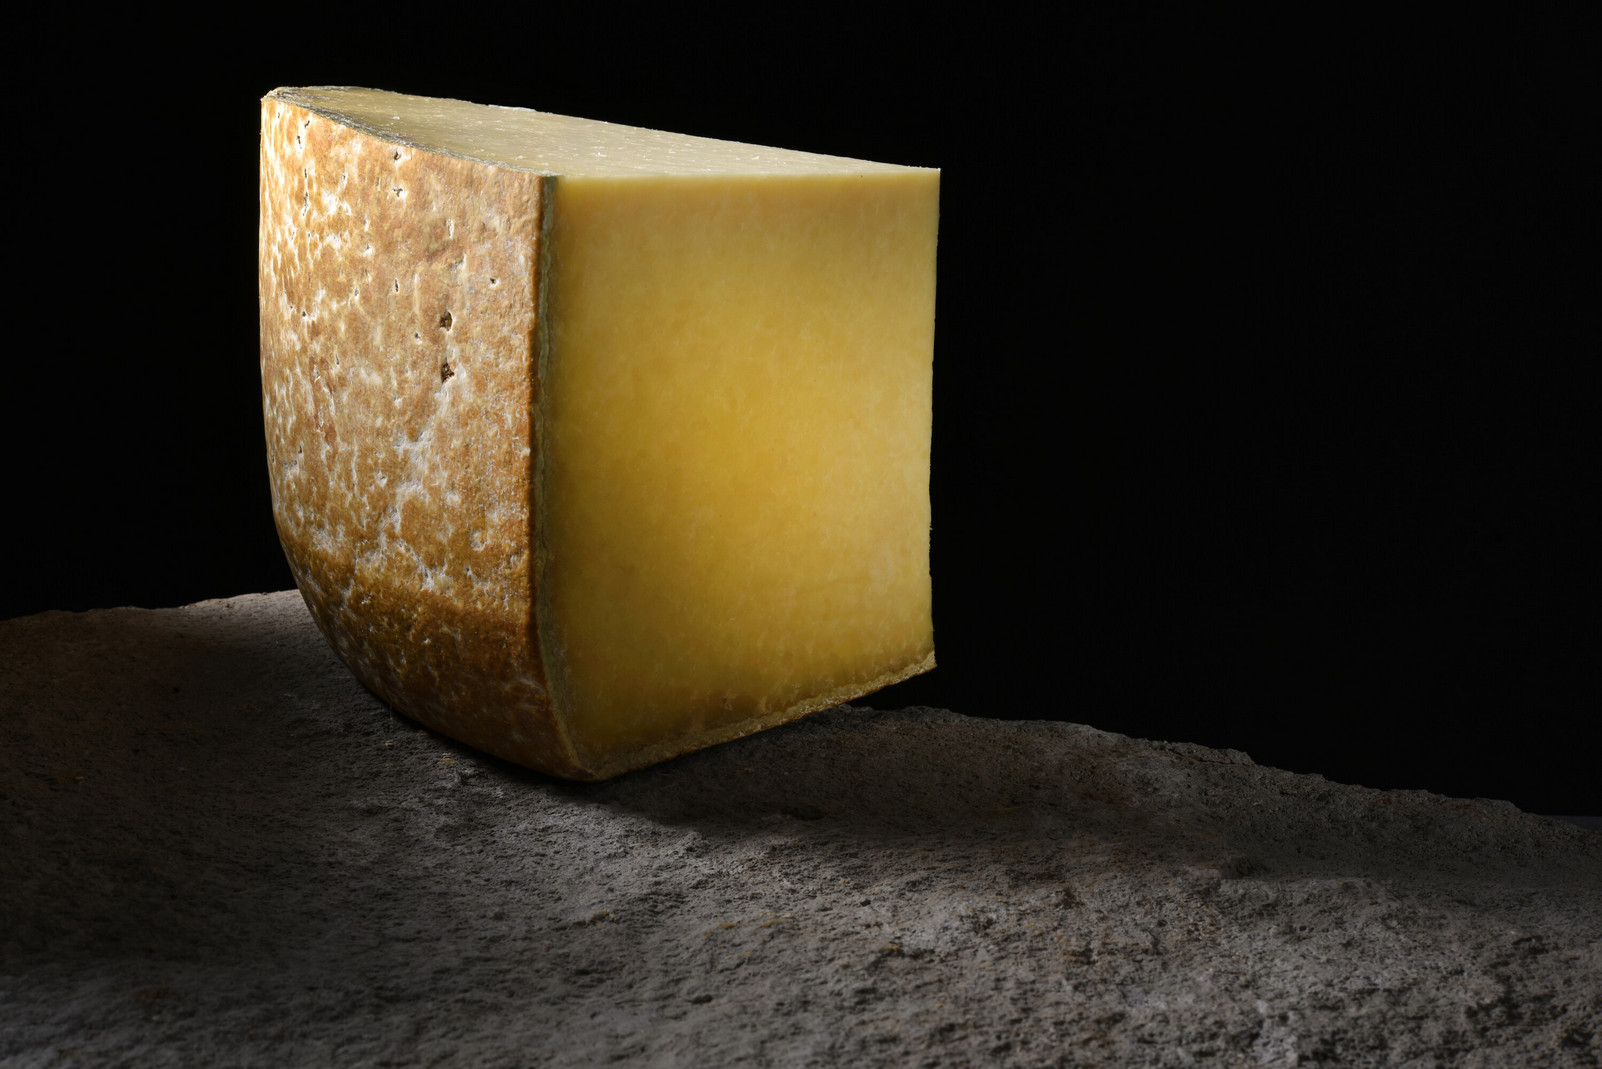 Salers AOP-Käse aus der Auvergne